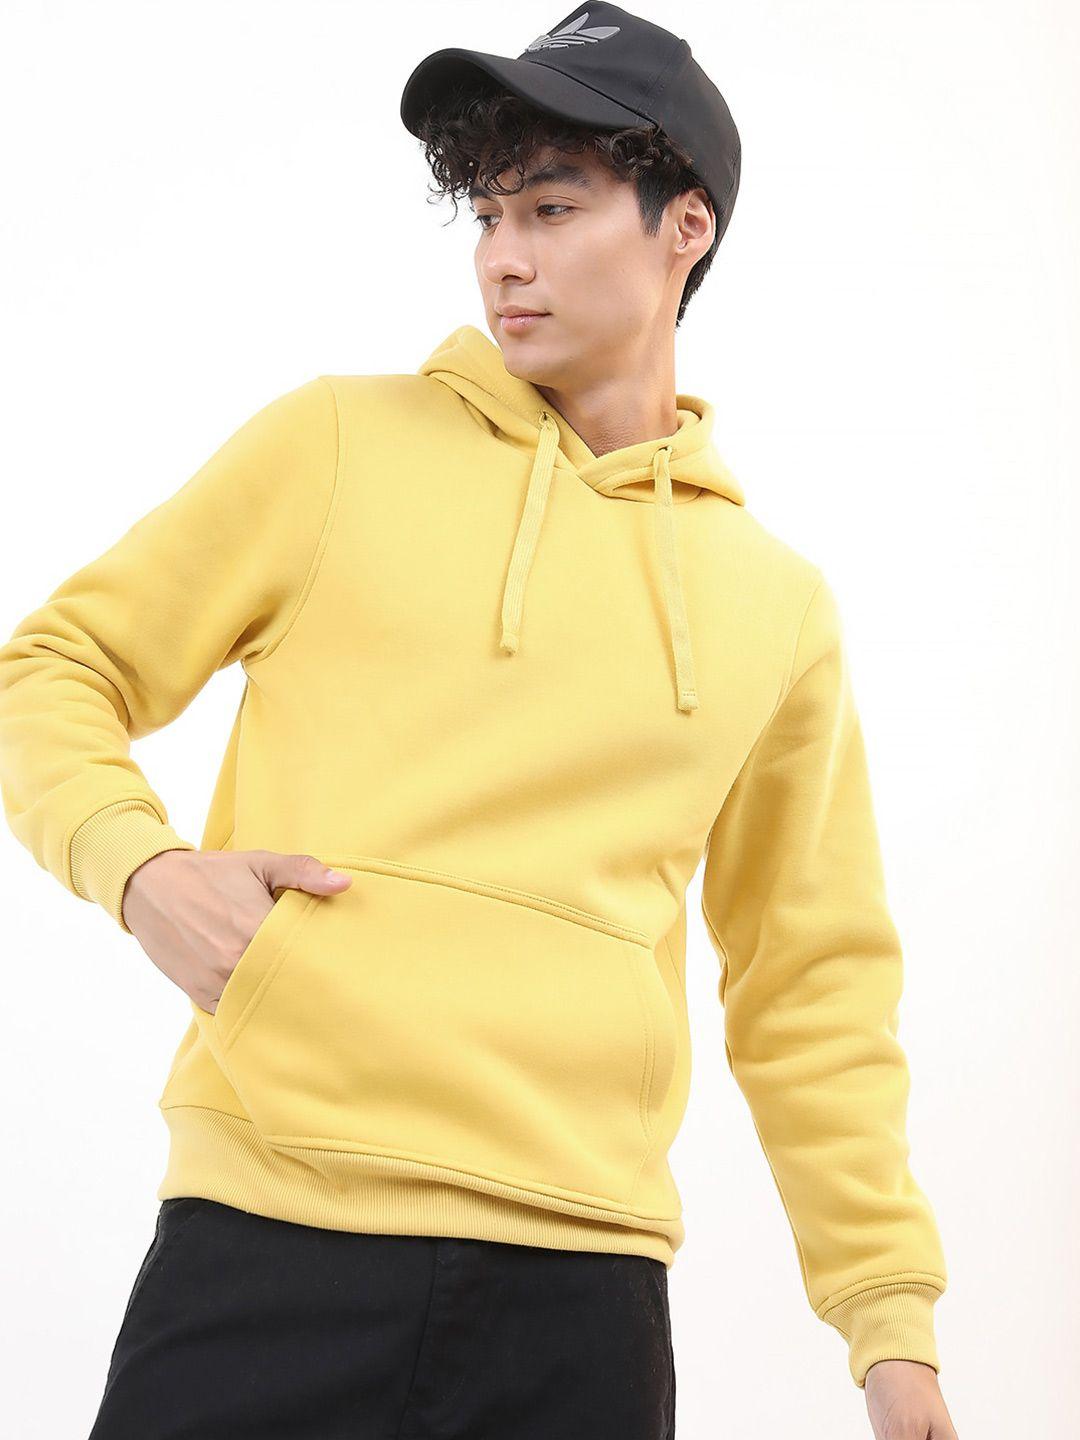 ketch-yellow-hooded-sweatshirt